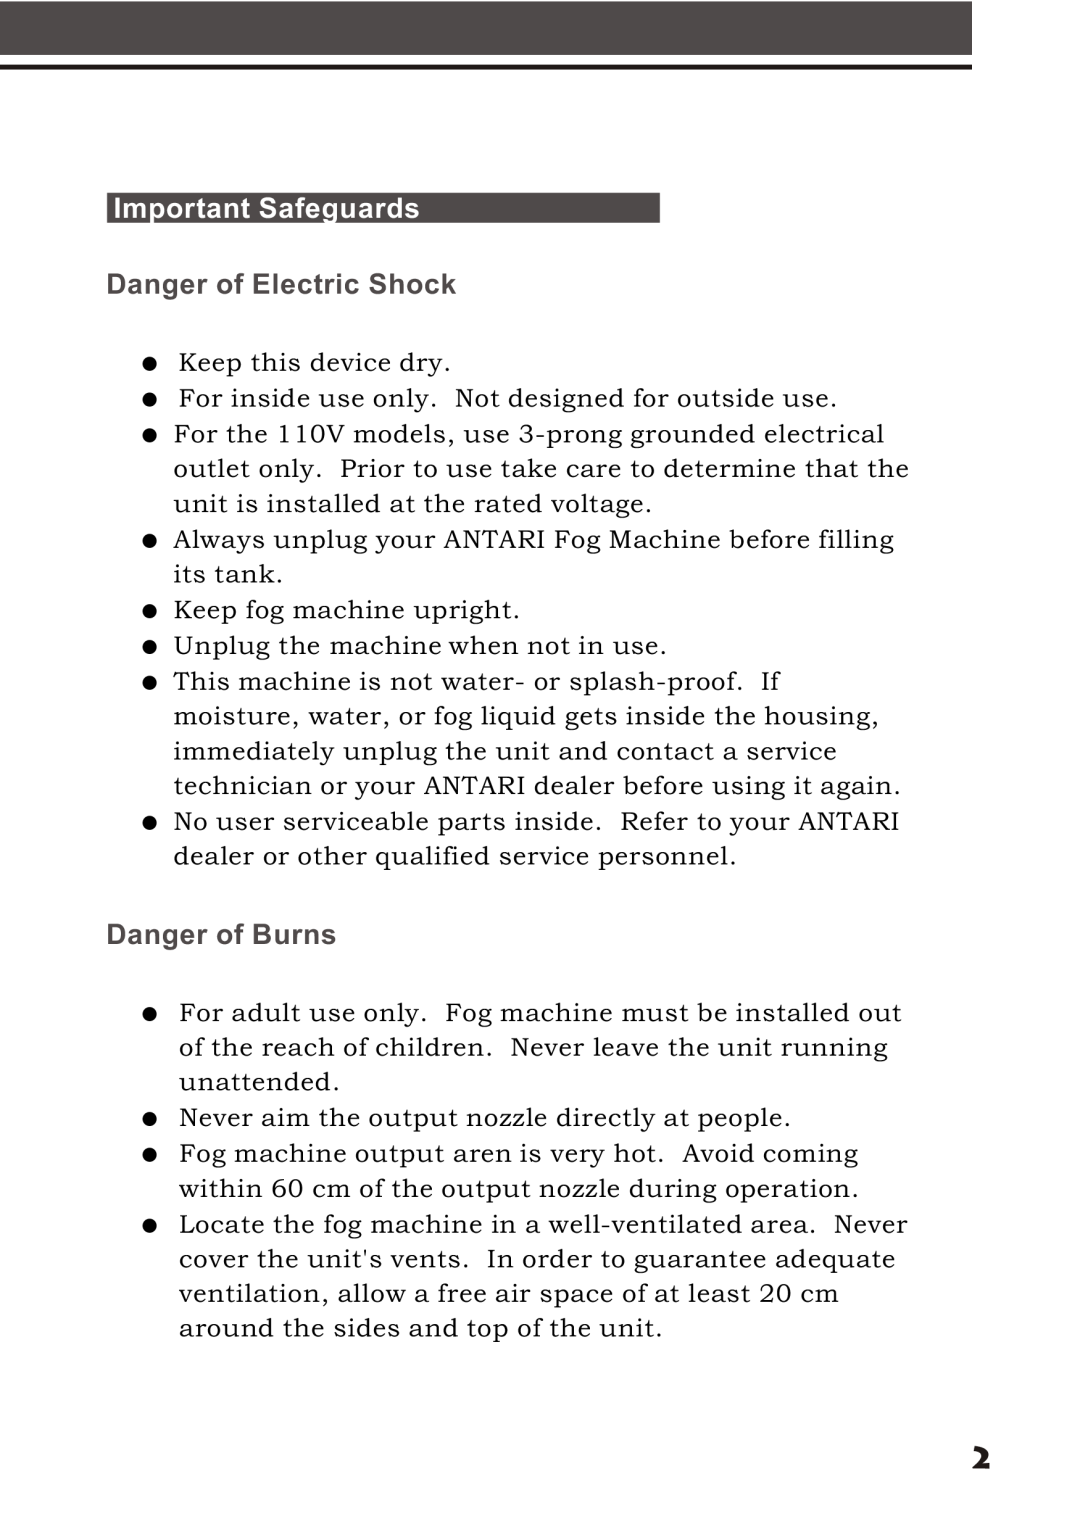 Elation Professional X-Fogger manual Important Safeguards, Danger of Electric Shock, Danger of Burns 